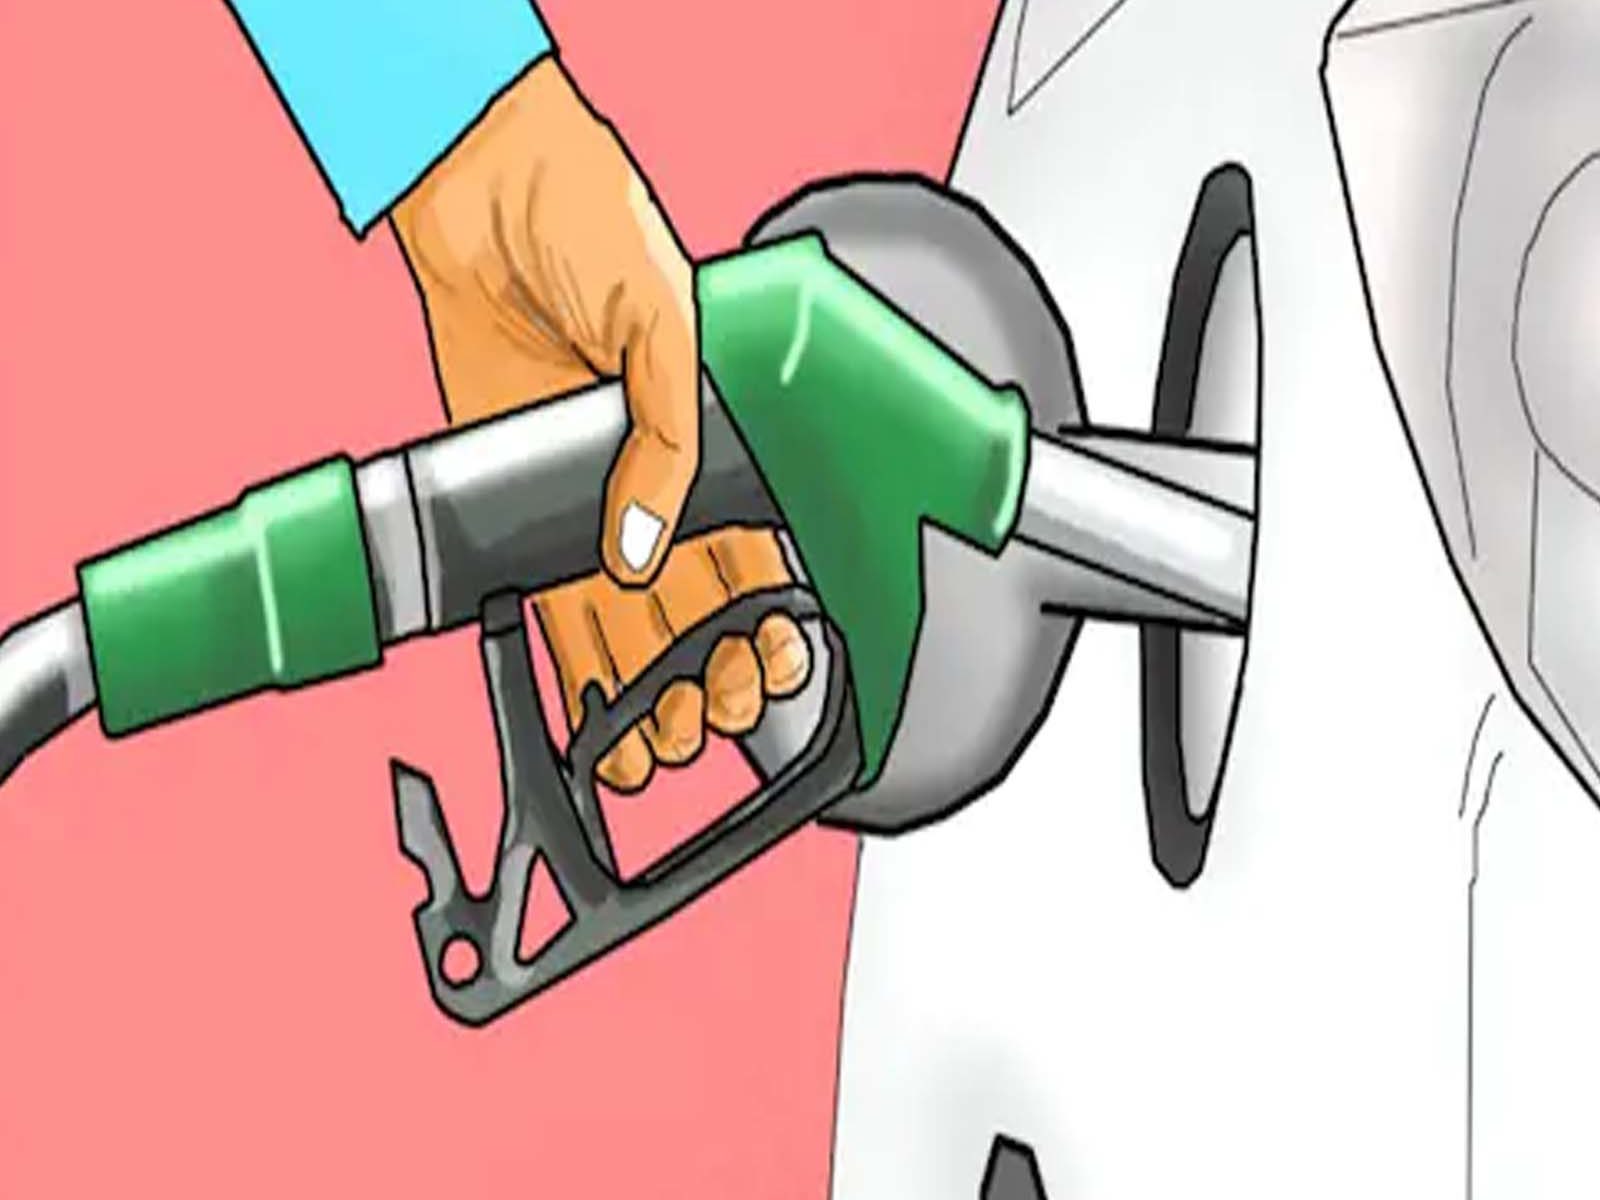  पेट्रोल डीजल का रोज का रेट आप SMS के जरिए भी जान सकते हैं (How to check diesel petrol price daily).